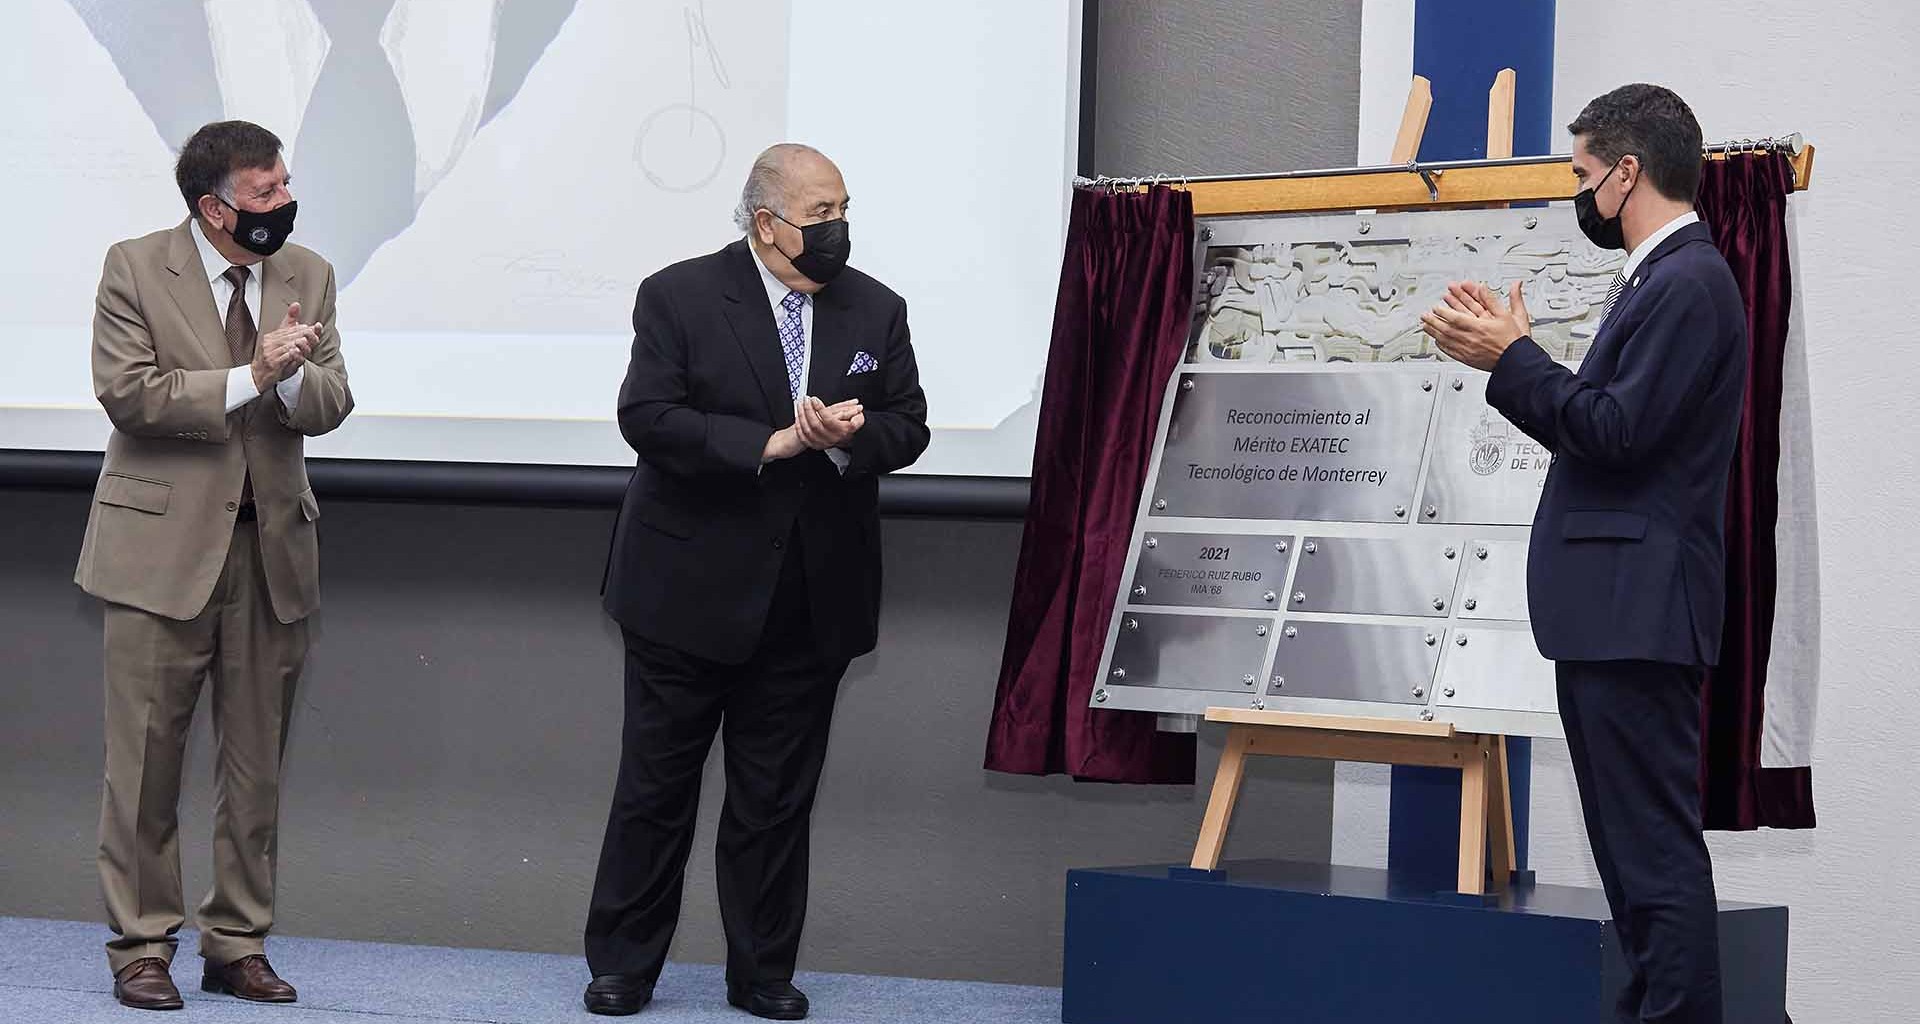 El EXATEC Federico Ruíz Rubio fue reconocido con el "Premio Mérito EXATEC" del Tec de Monterrey campus Querétaro,